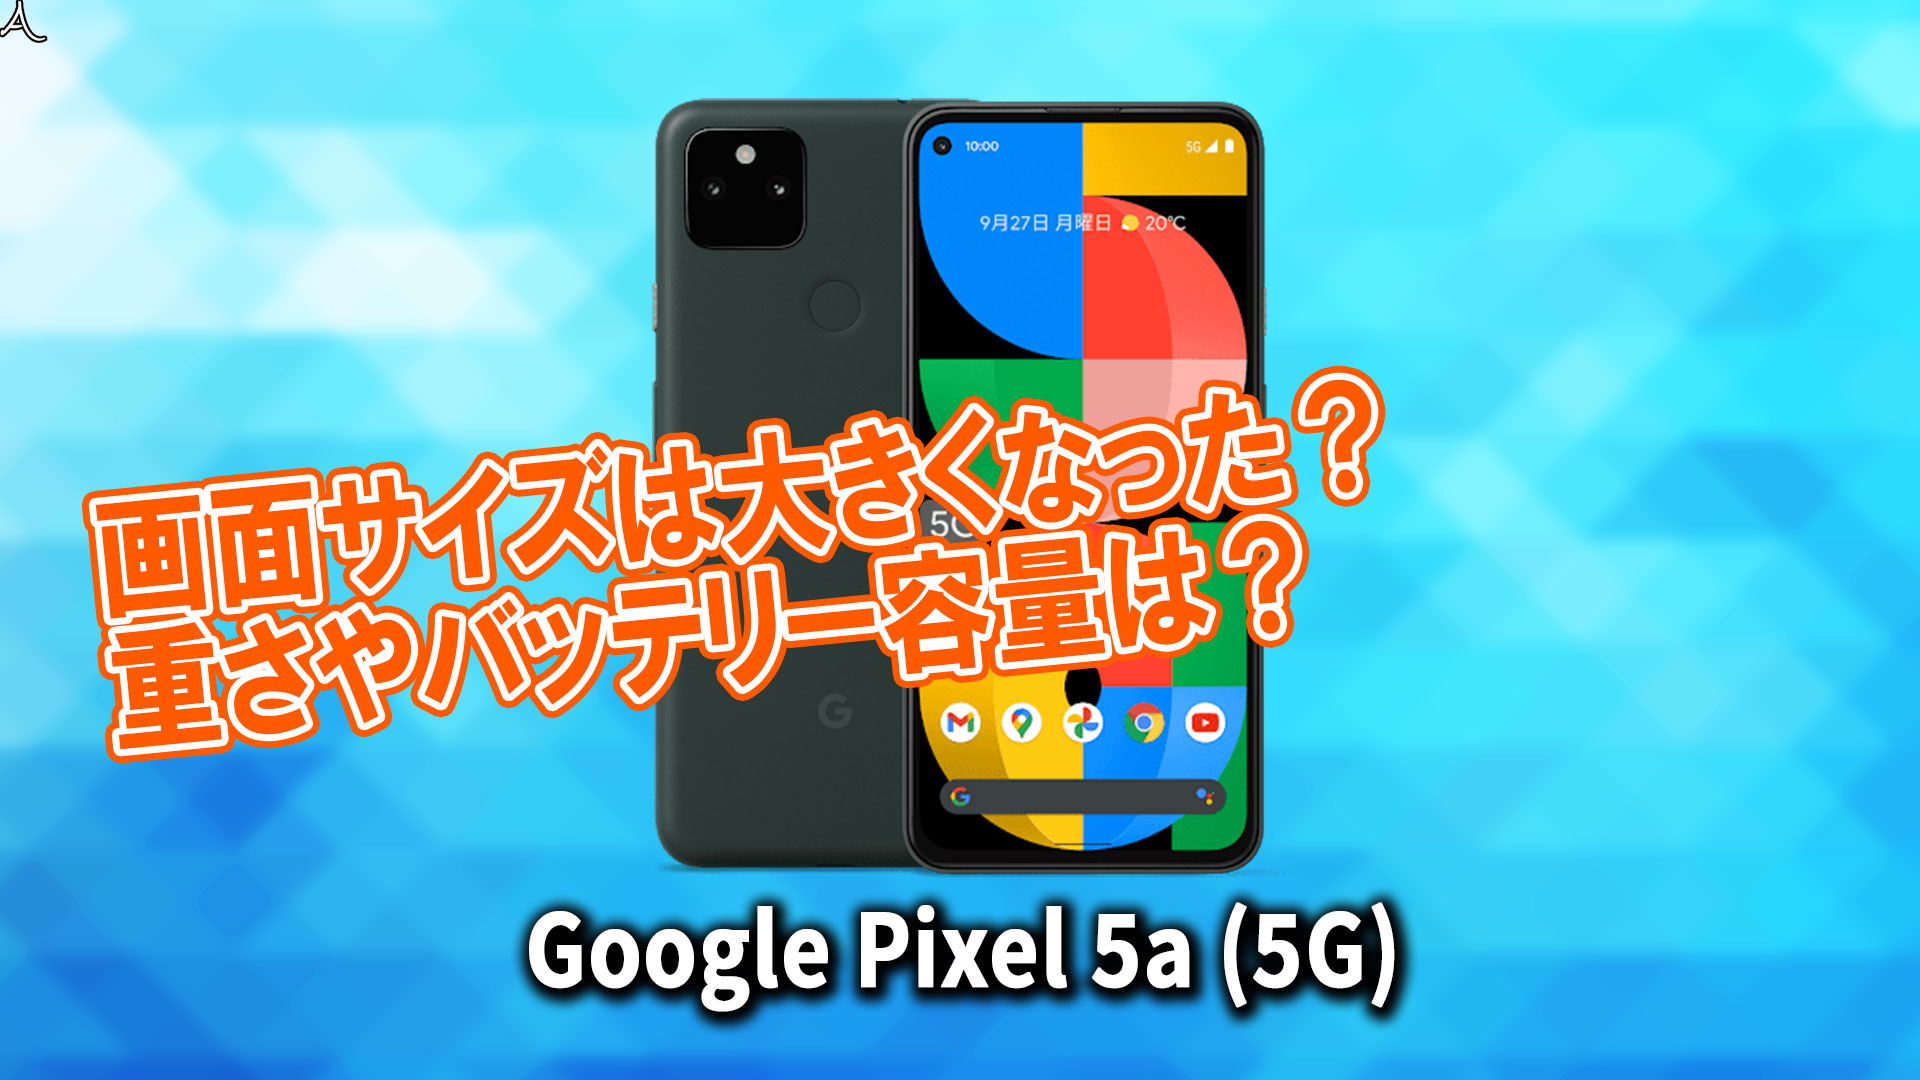 「Google Pixel 5a (5G)」のサイズや重さを他のスマホと細かく比較